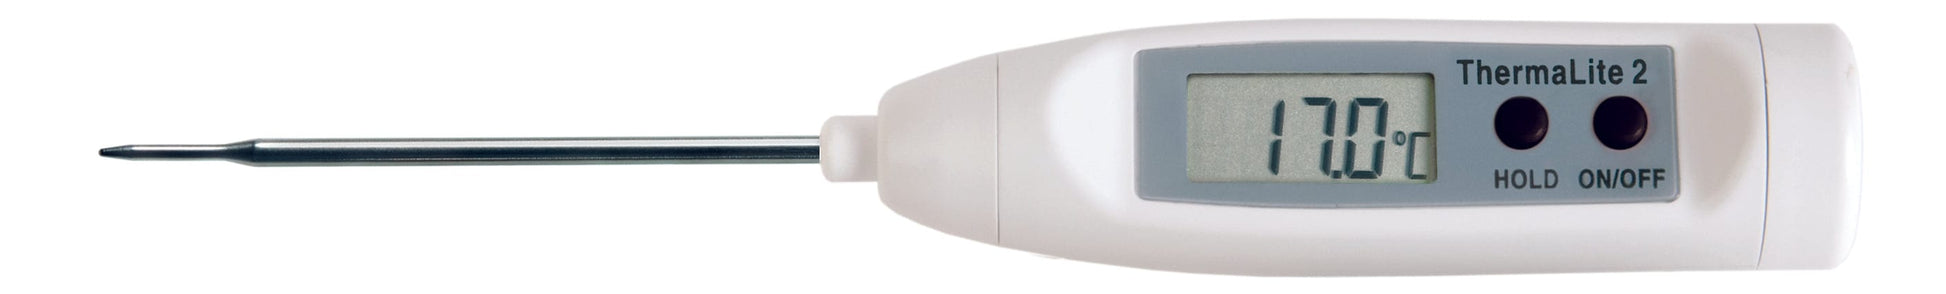 Un thermomètre numérique Thermometre.fr ThermaLite 2 sur fond blanc.